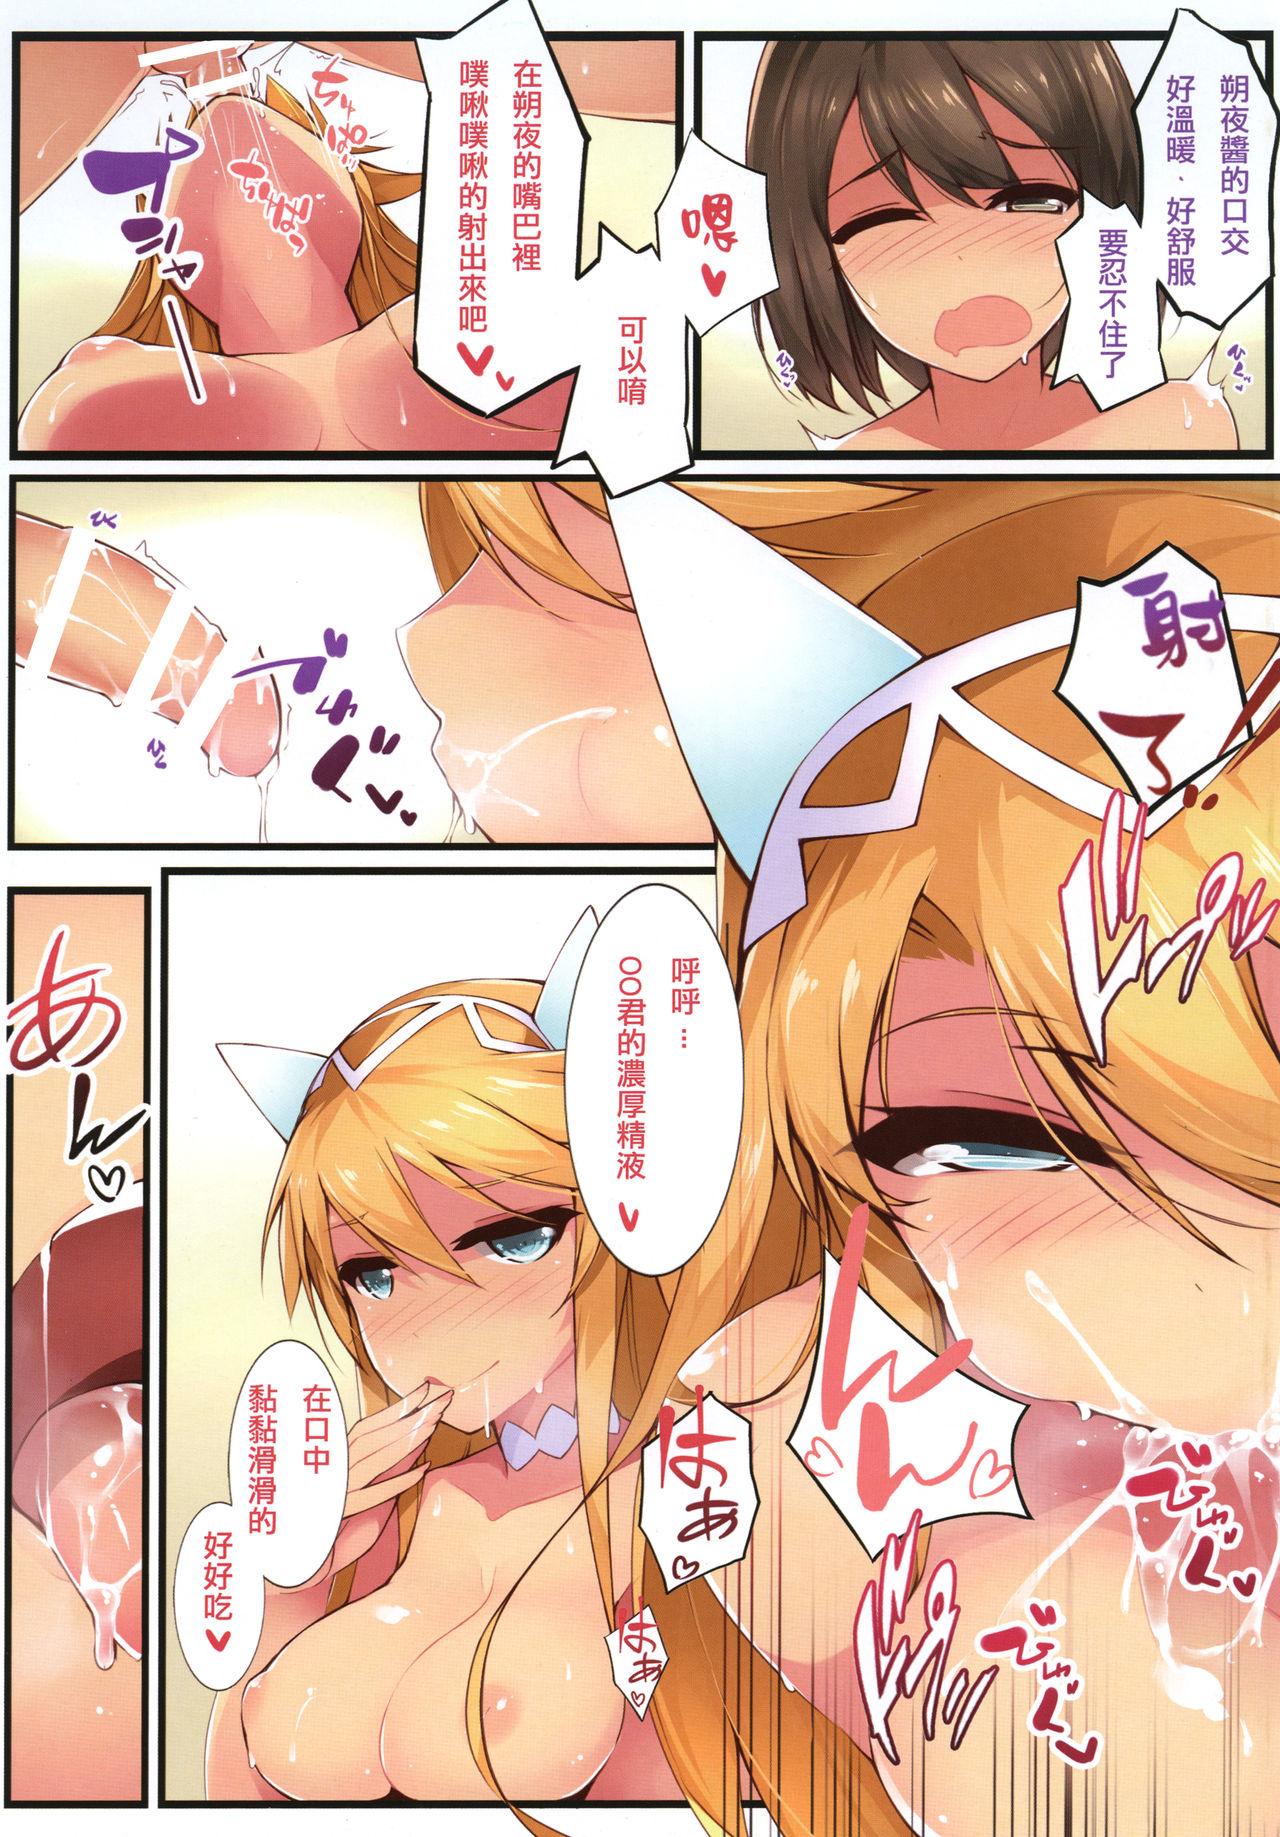 Cumming Watashi ga Mote Nai No wa, Do Kangaete mo Kesenai Tama no Seida! - Puzzle and dragons Sperm - Page 7